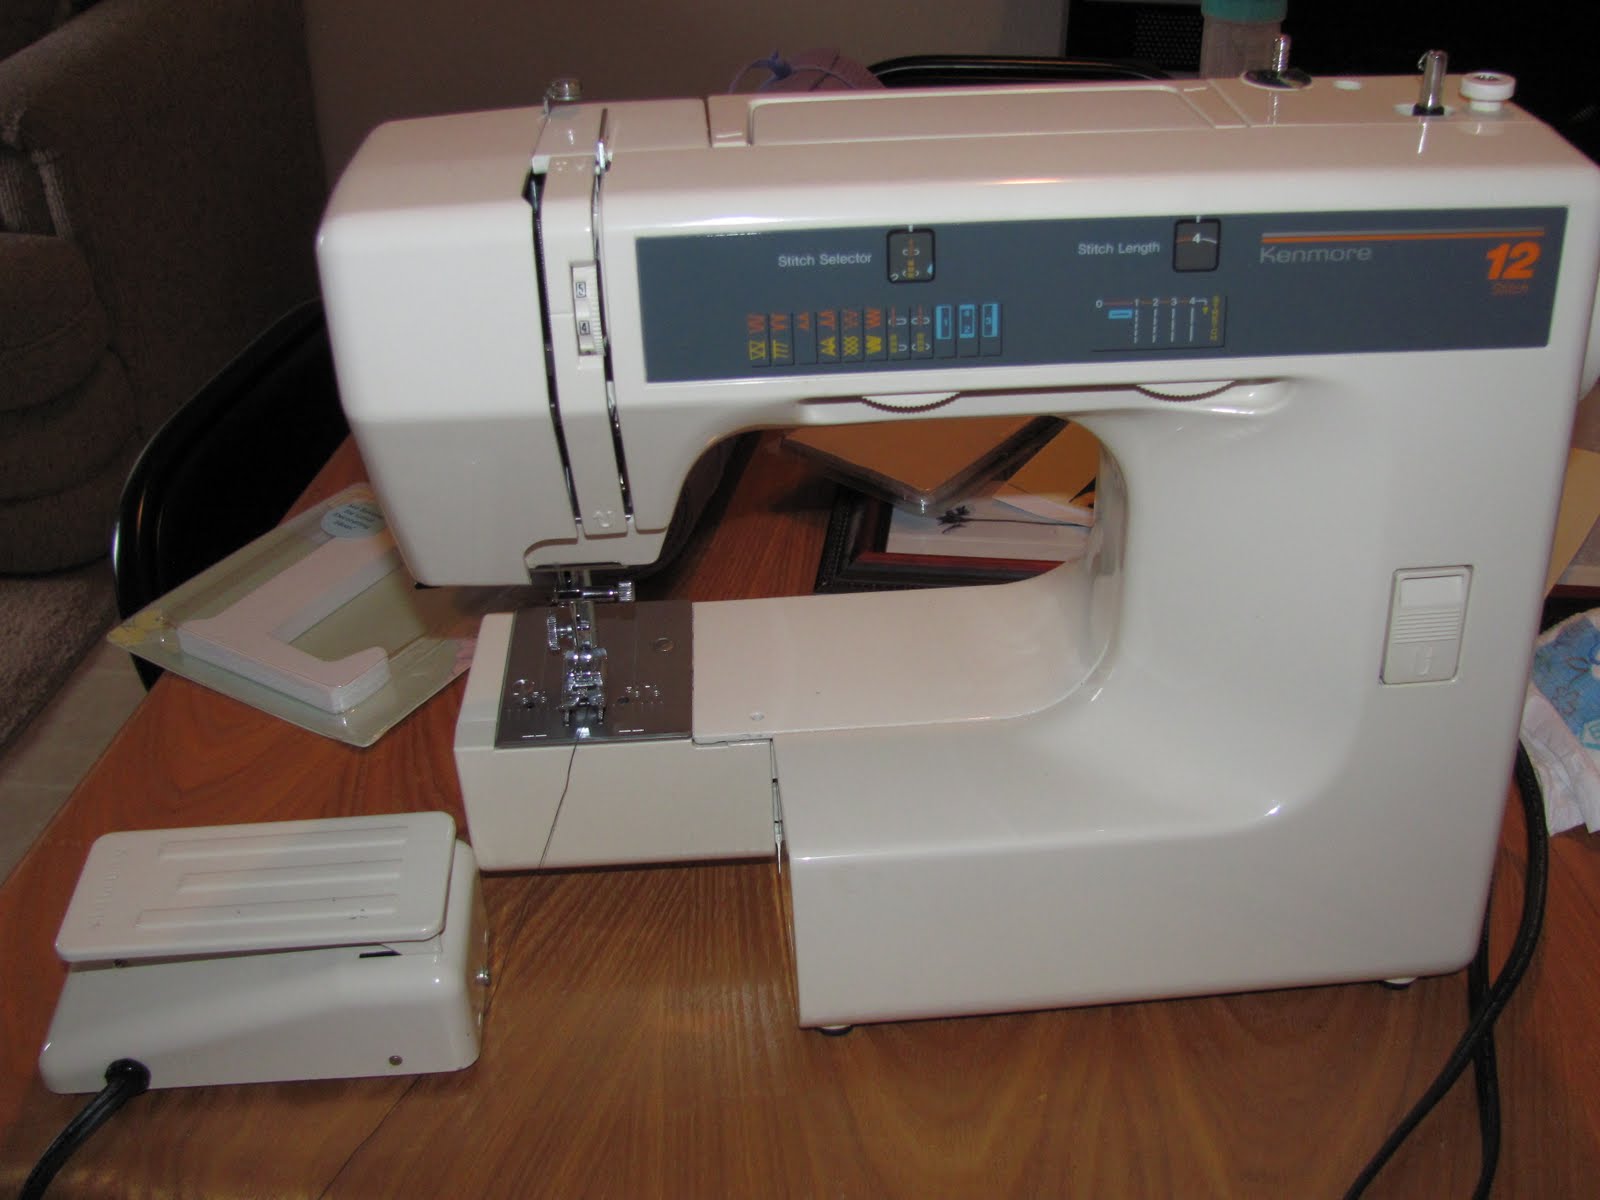 Super online yard sale!!: 20.00 Kenmore sewing machine, 12 stitches